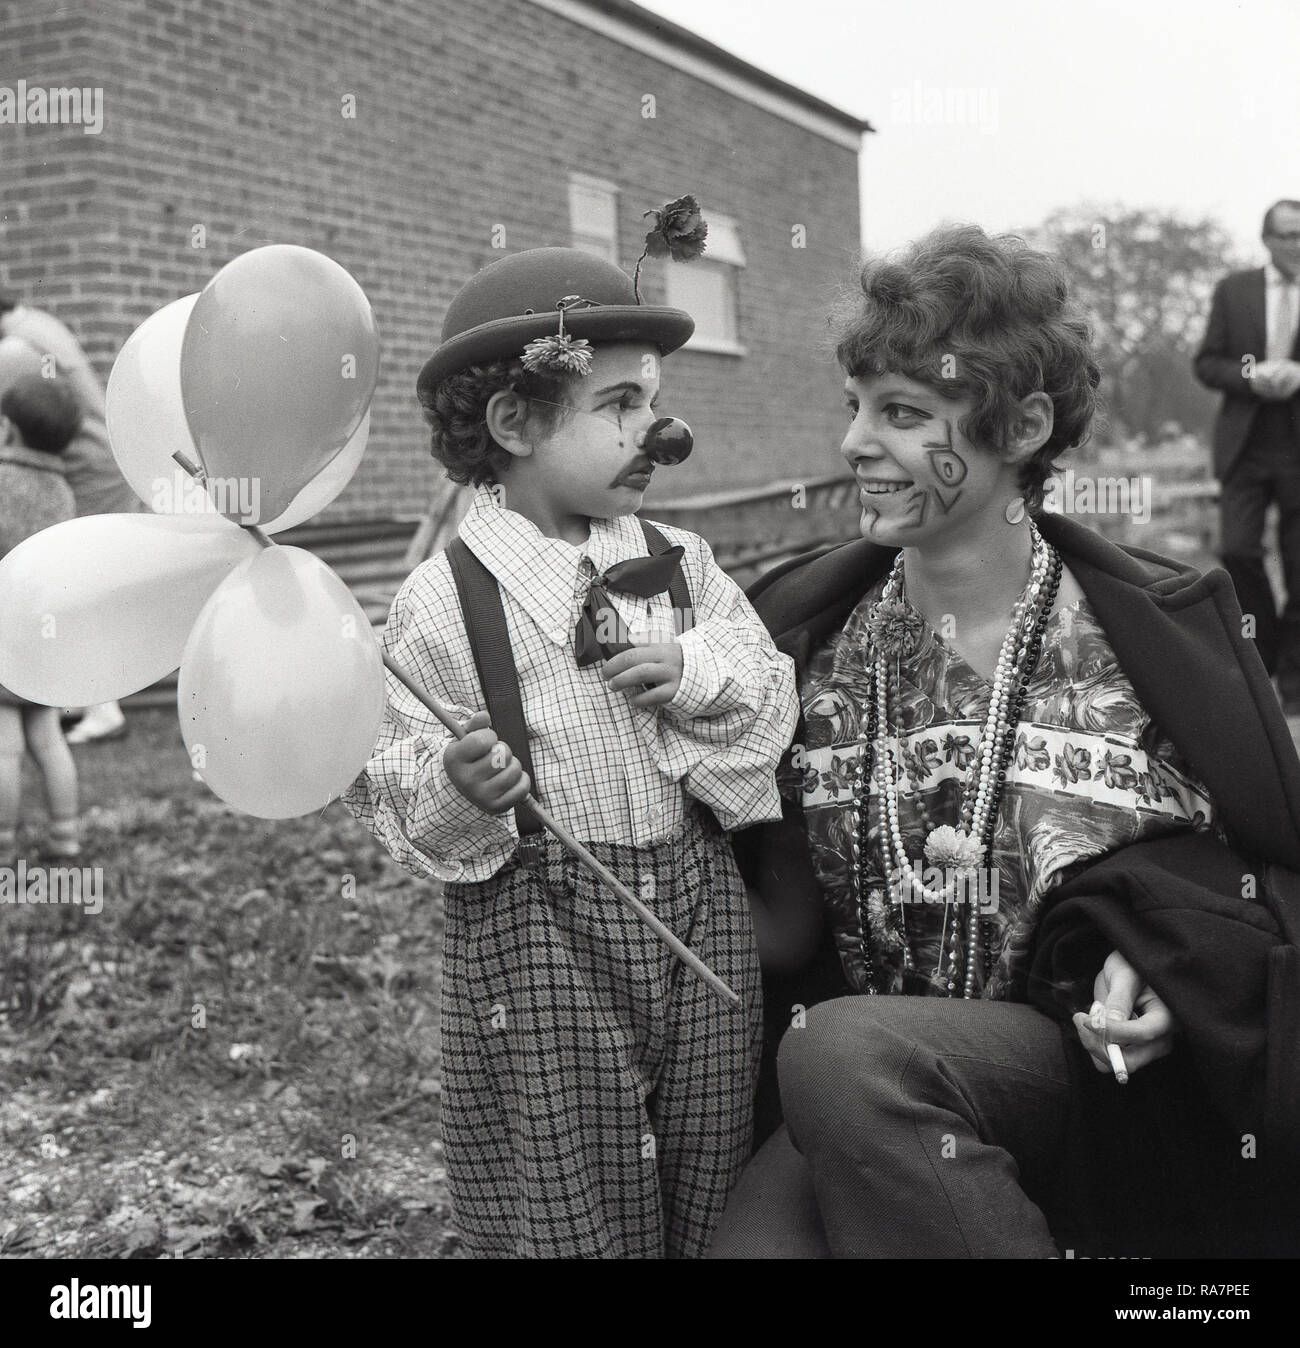 1965, fête du village, la mère avec le mot 'Amour' peint sur son visage, avec elle, un jeune garçon en robe de soirée, portant un chapeau et le nez d'un clown et ballons holding, England, UK. Banque D'Images